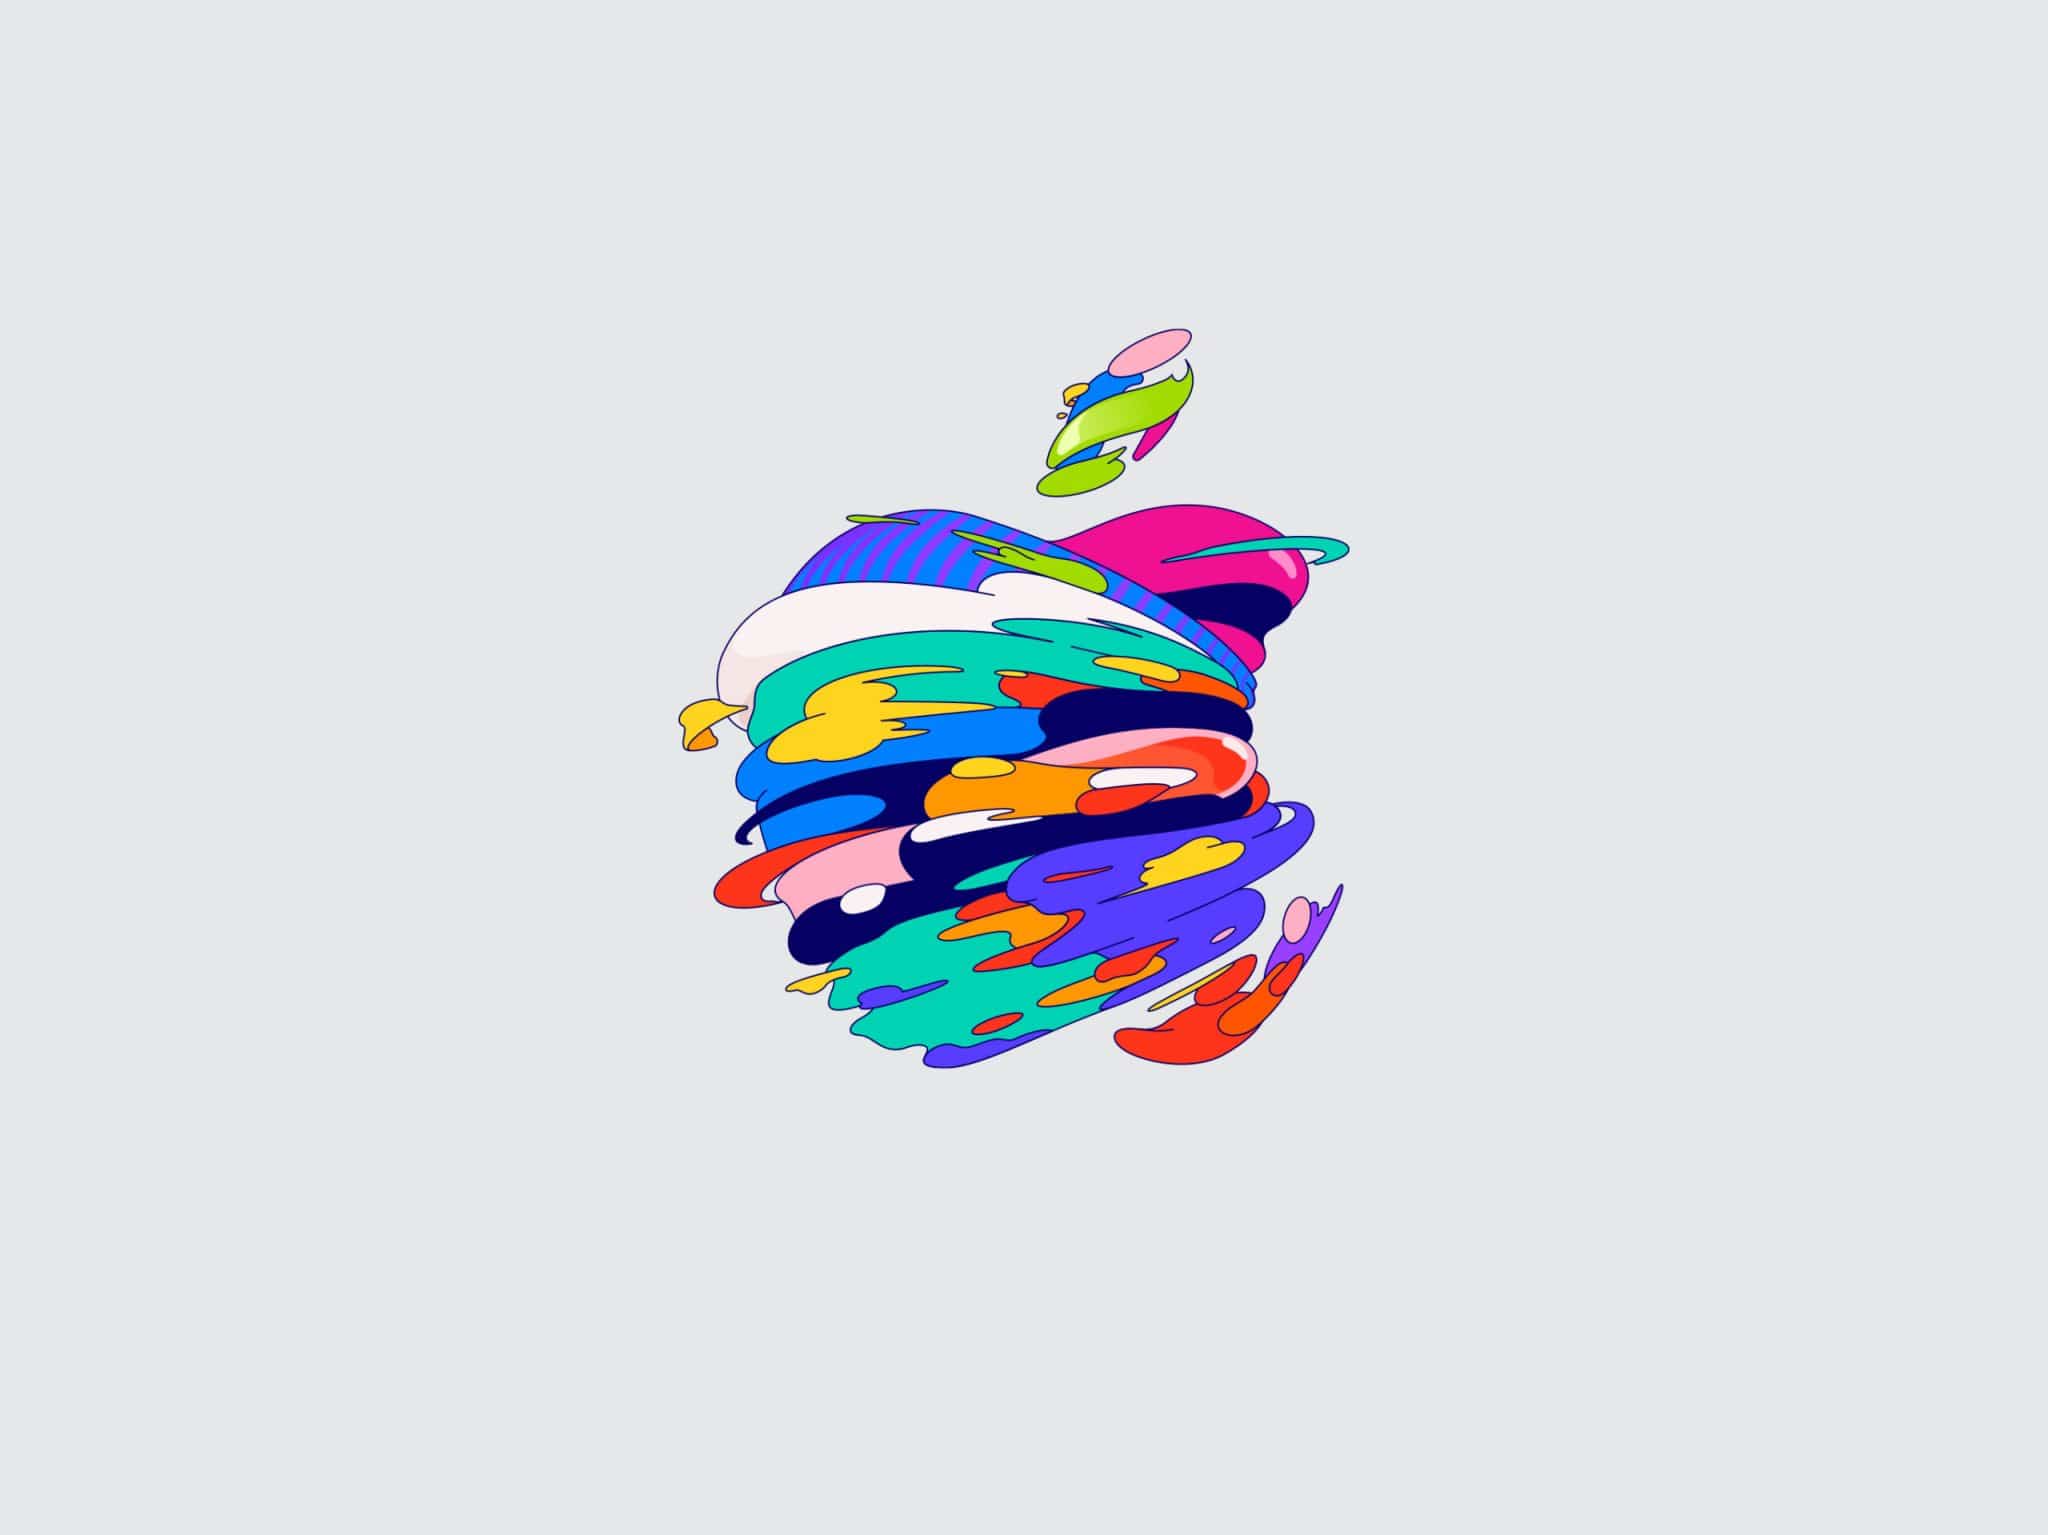 Papel pintado fondo gris y logo multicolor de manzana mordida